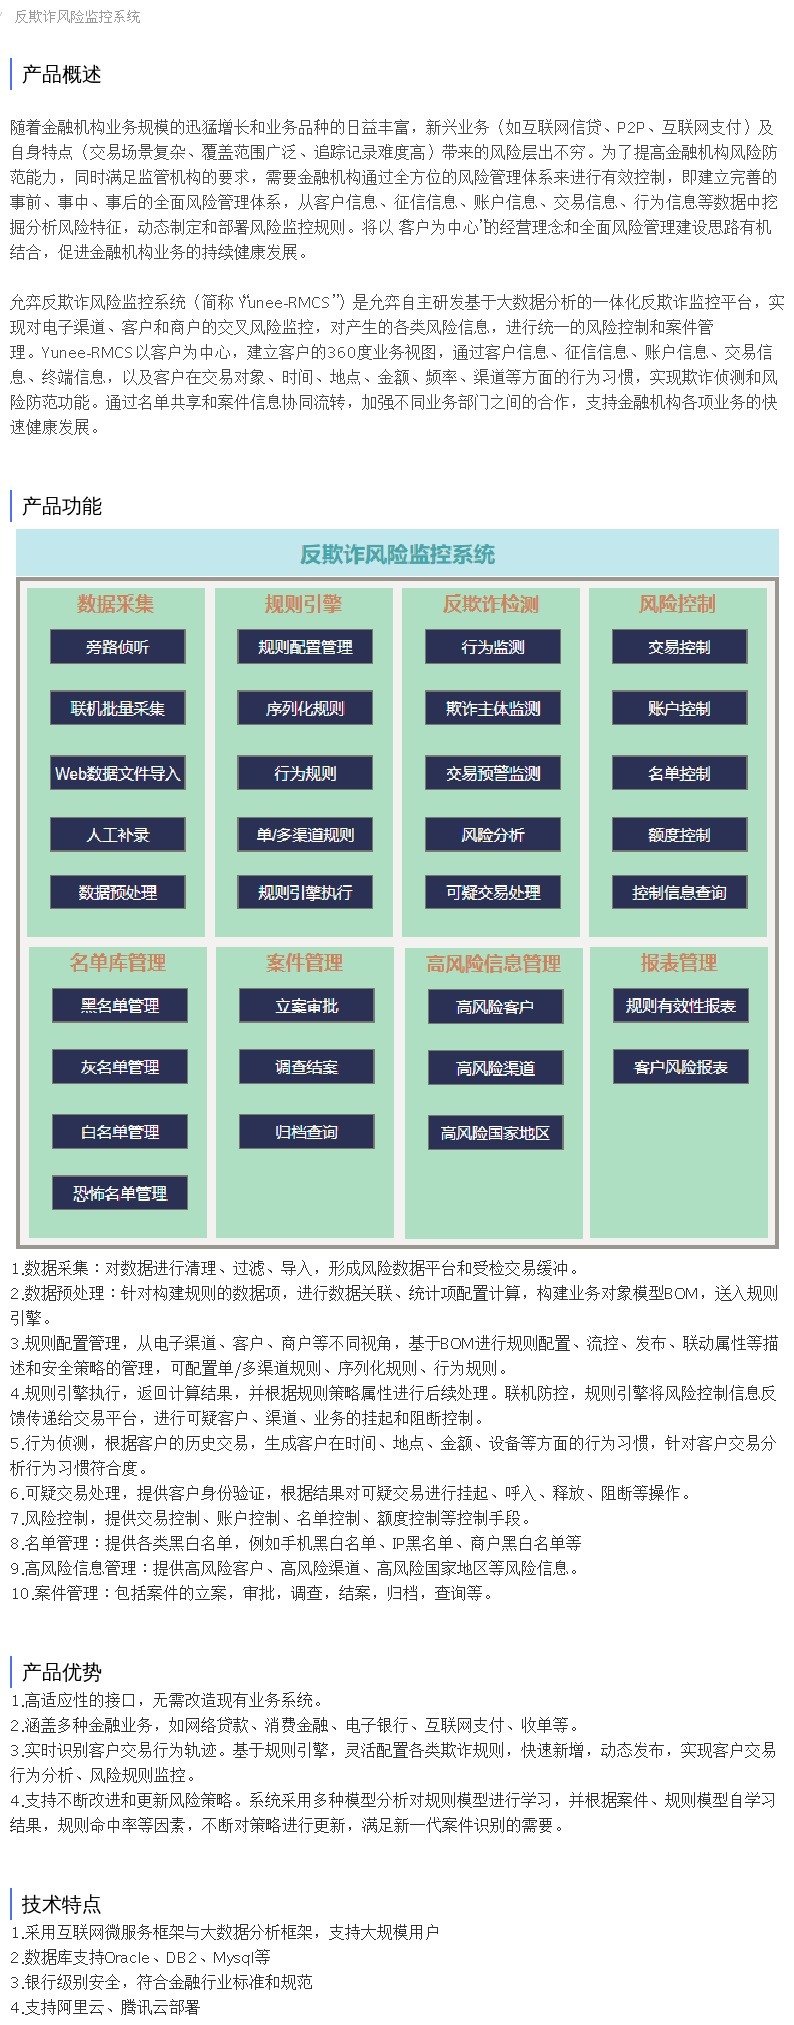 企服商城, 反欺诈风险监控系统,上海允弈信息科技